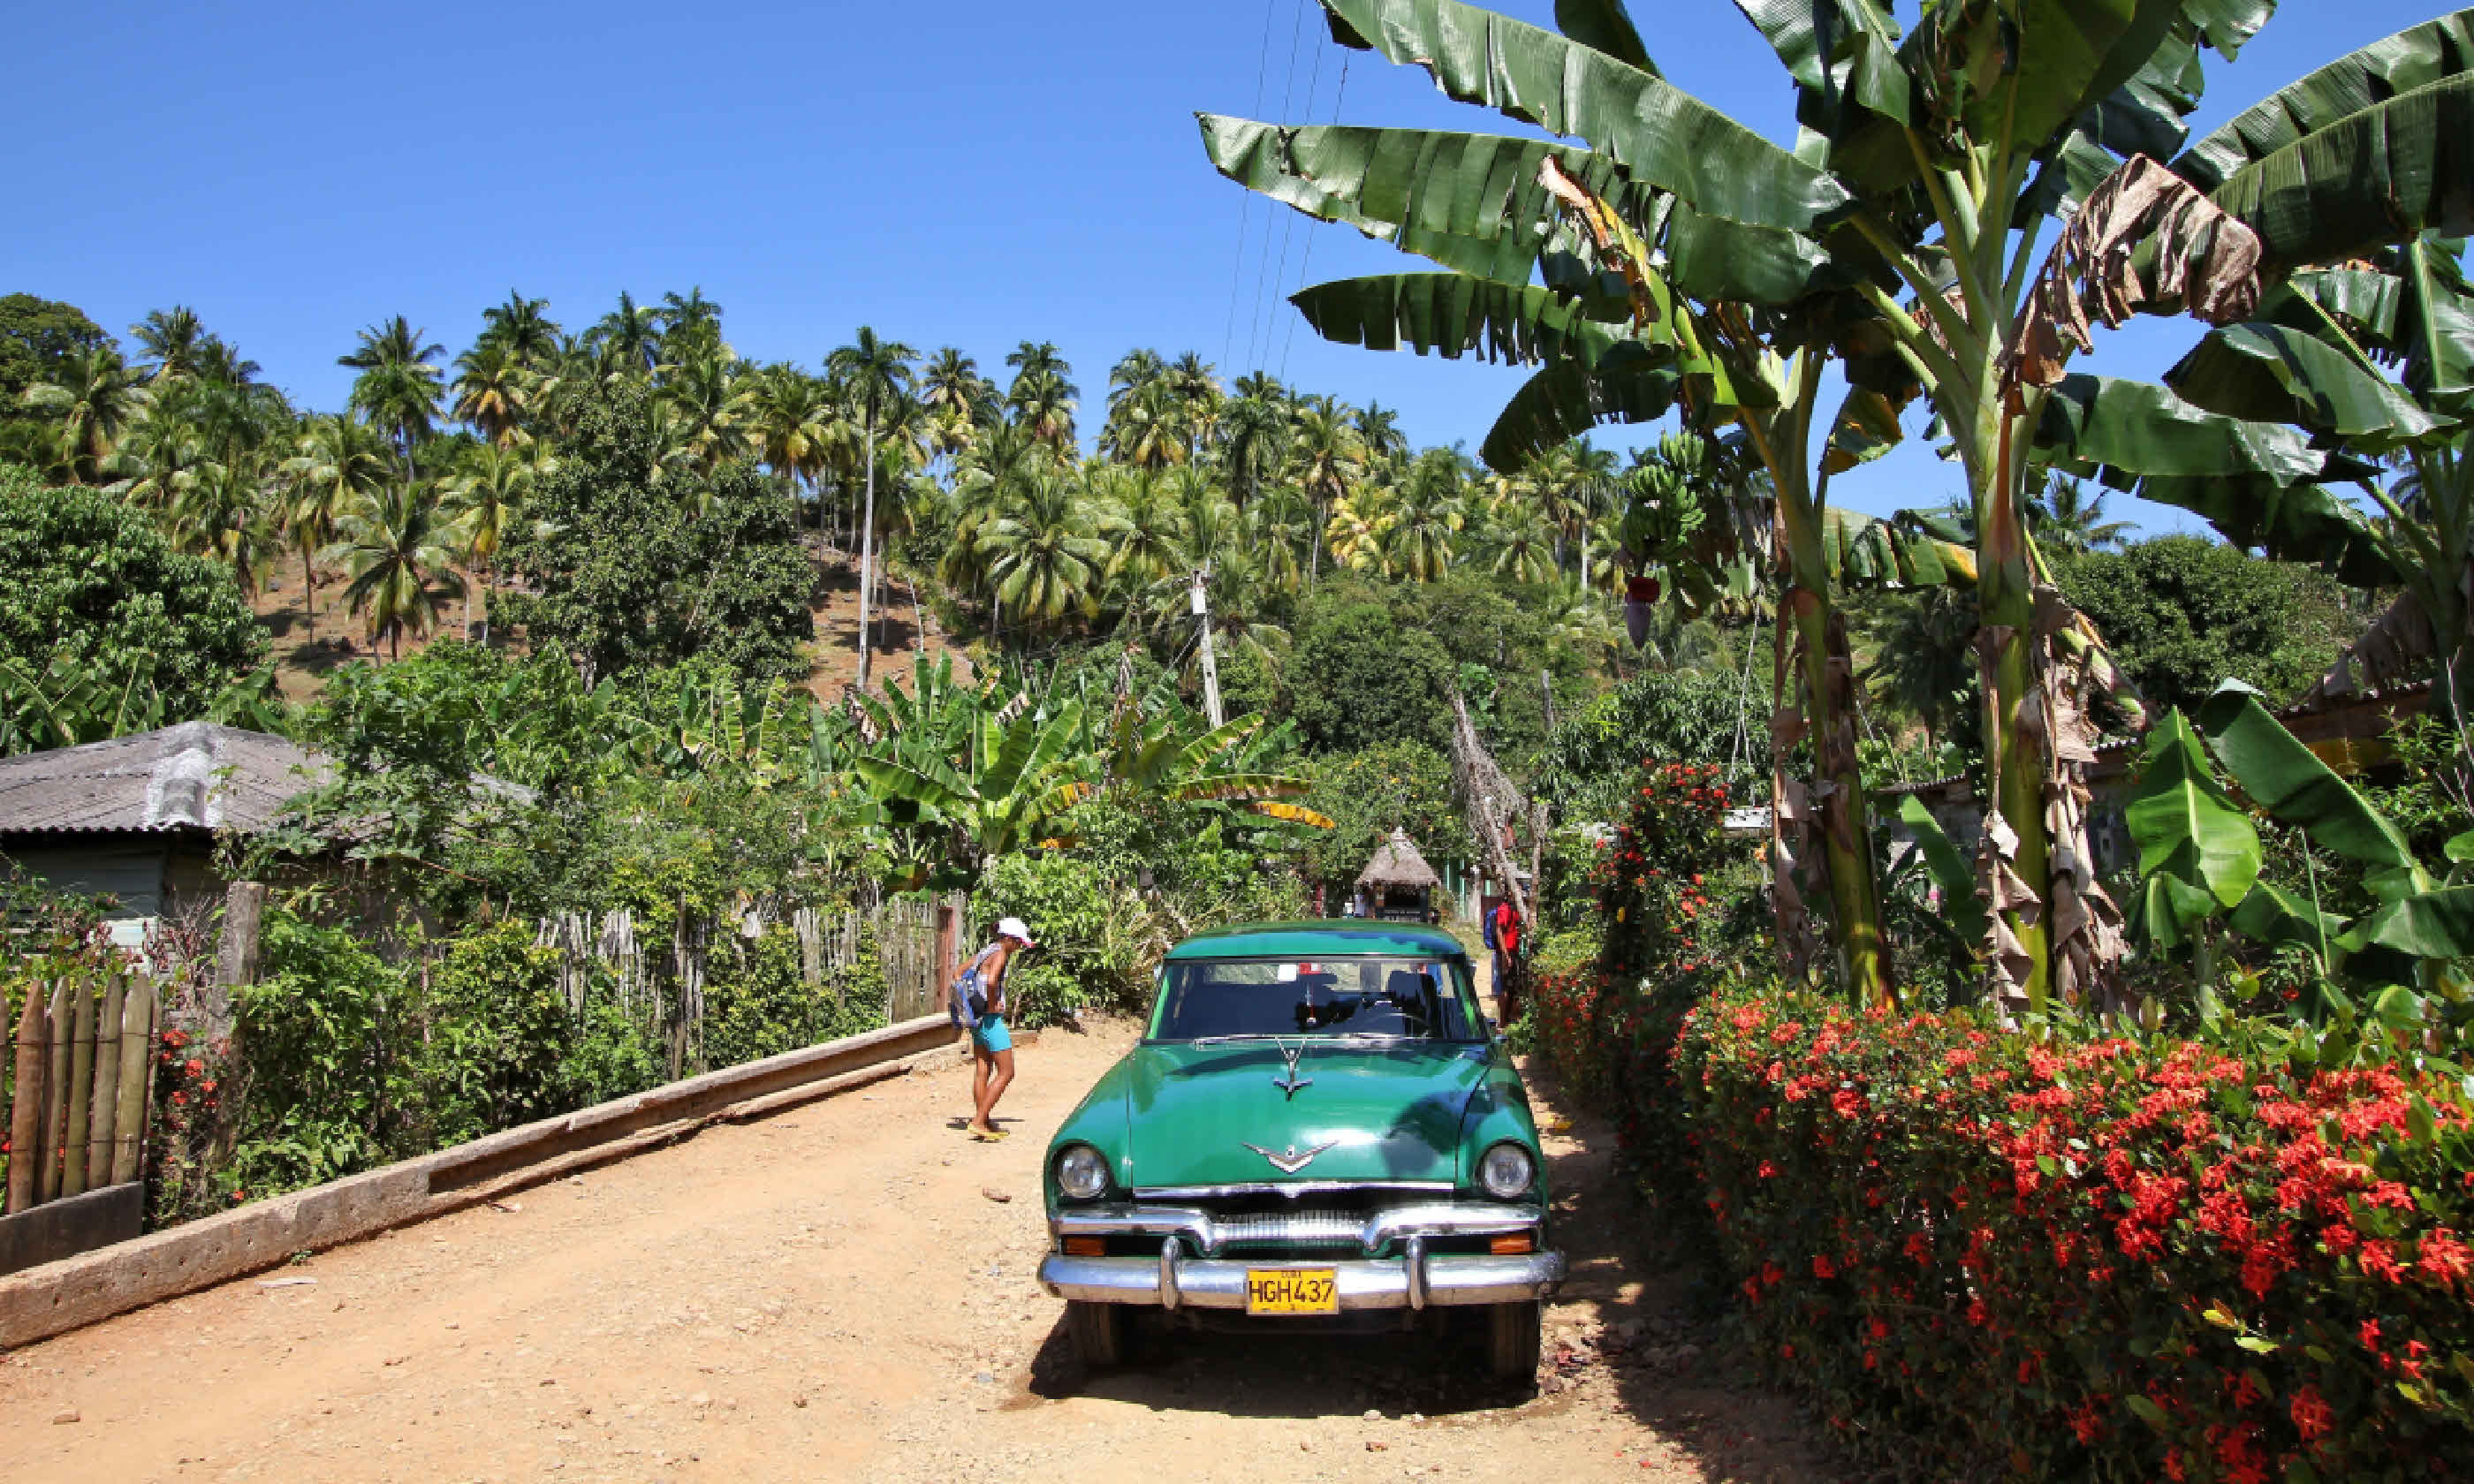 Oldtimer car in Baracoa, Cuba (Shutterstock)